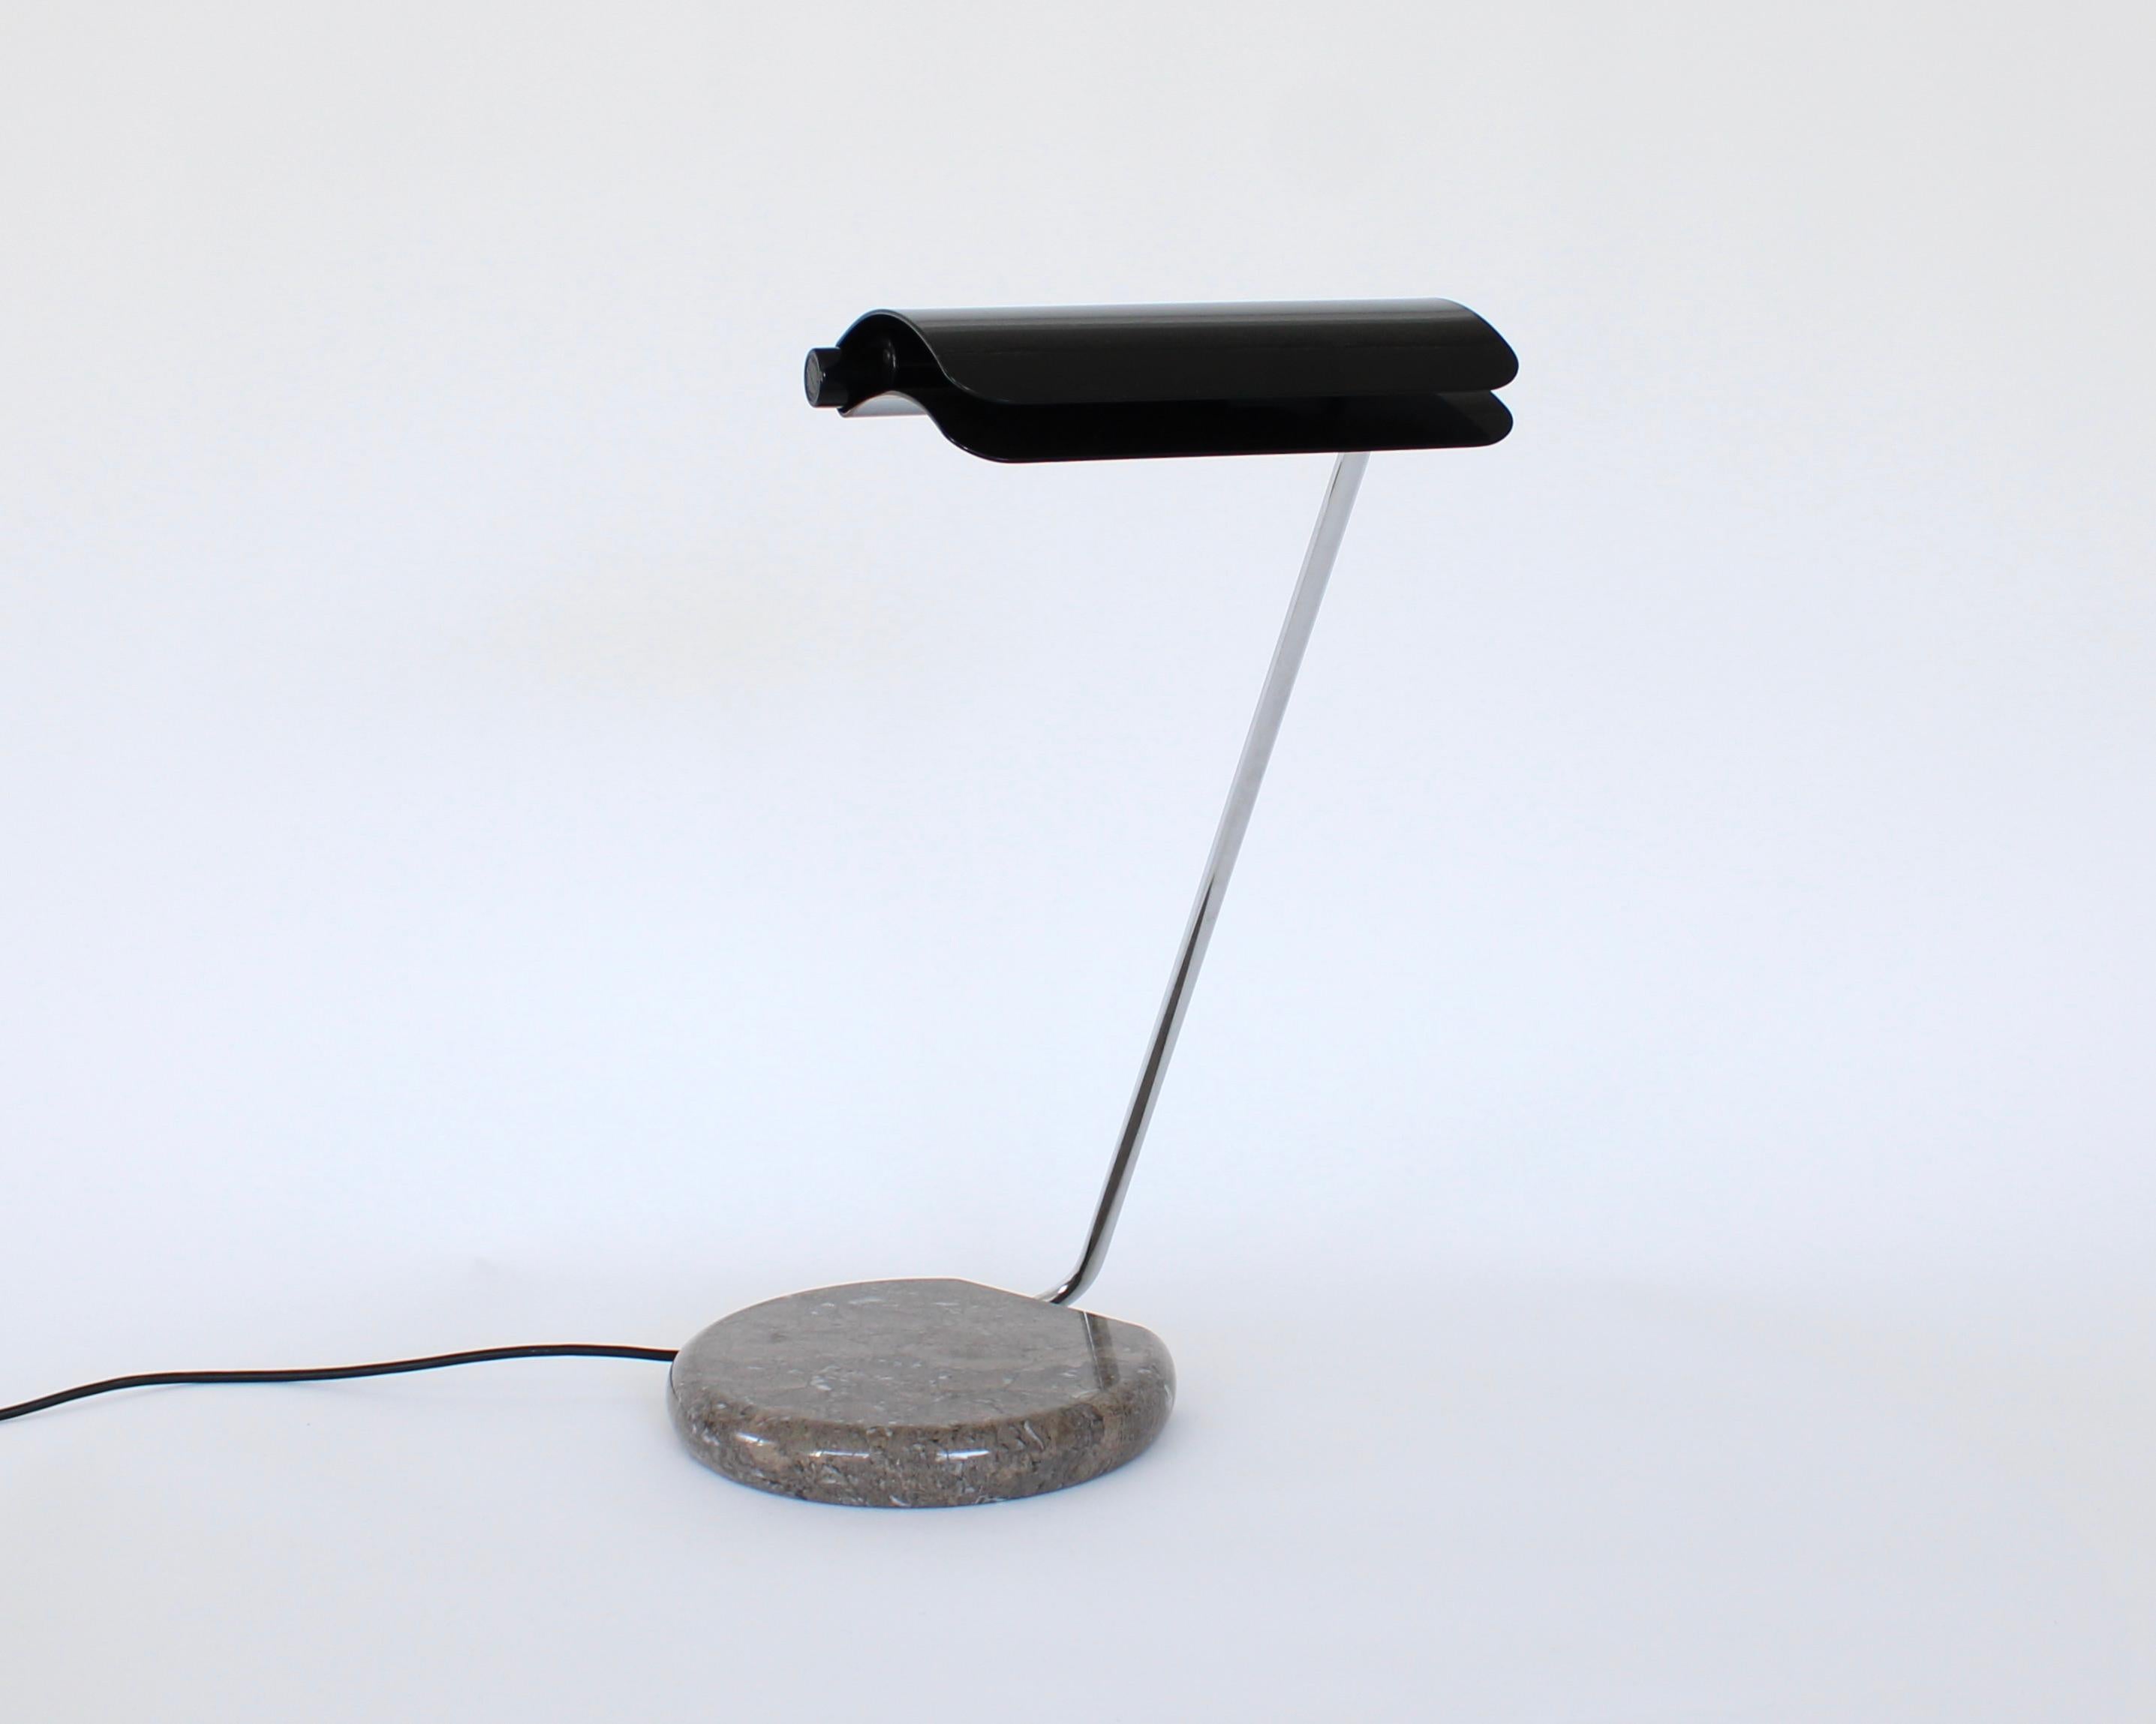 Dieses Modell der Tegola-Leuchte wurde von Bruno Gecchelin für Skipper und Pollux entworfen. 
Der Sockel ist aus braunem Grigio-Marmor mit einem schwarz lackierten Metallschirm. 
Tegola bedeutet auf Italienisch Dachziegel, denen der Farbton